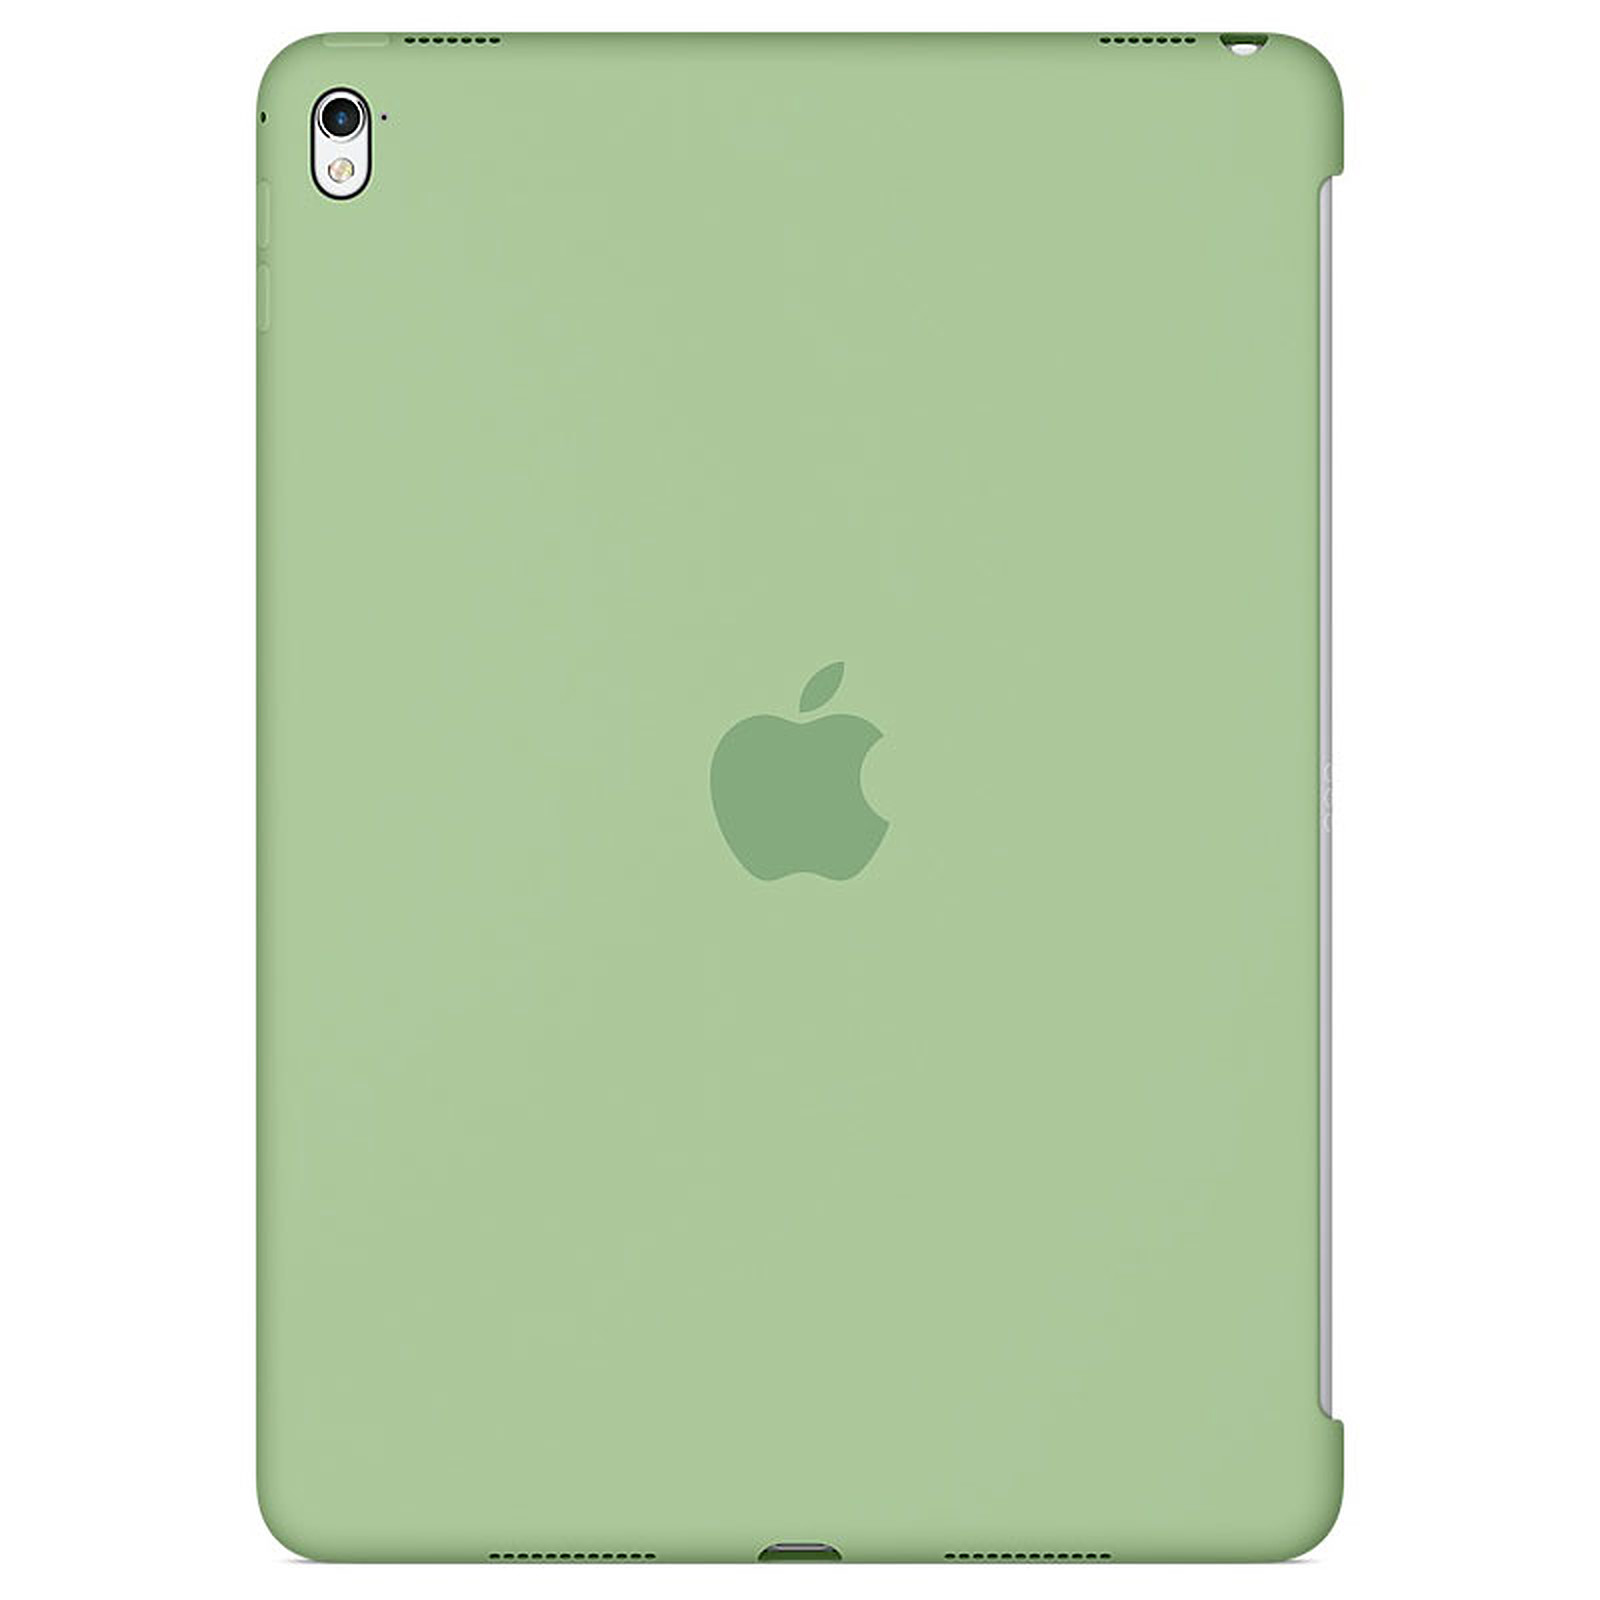 Apple iPad Pro 9.7" Silicone Case Menthe - Etui tablette Apple